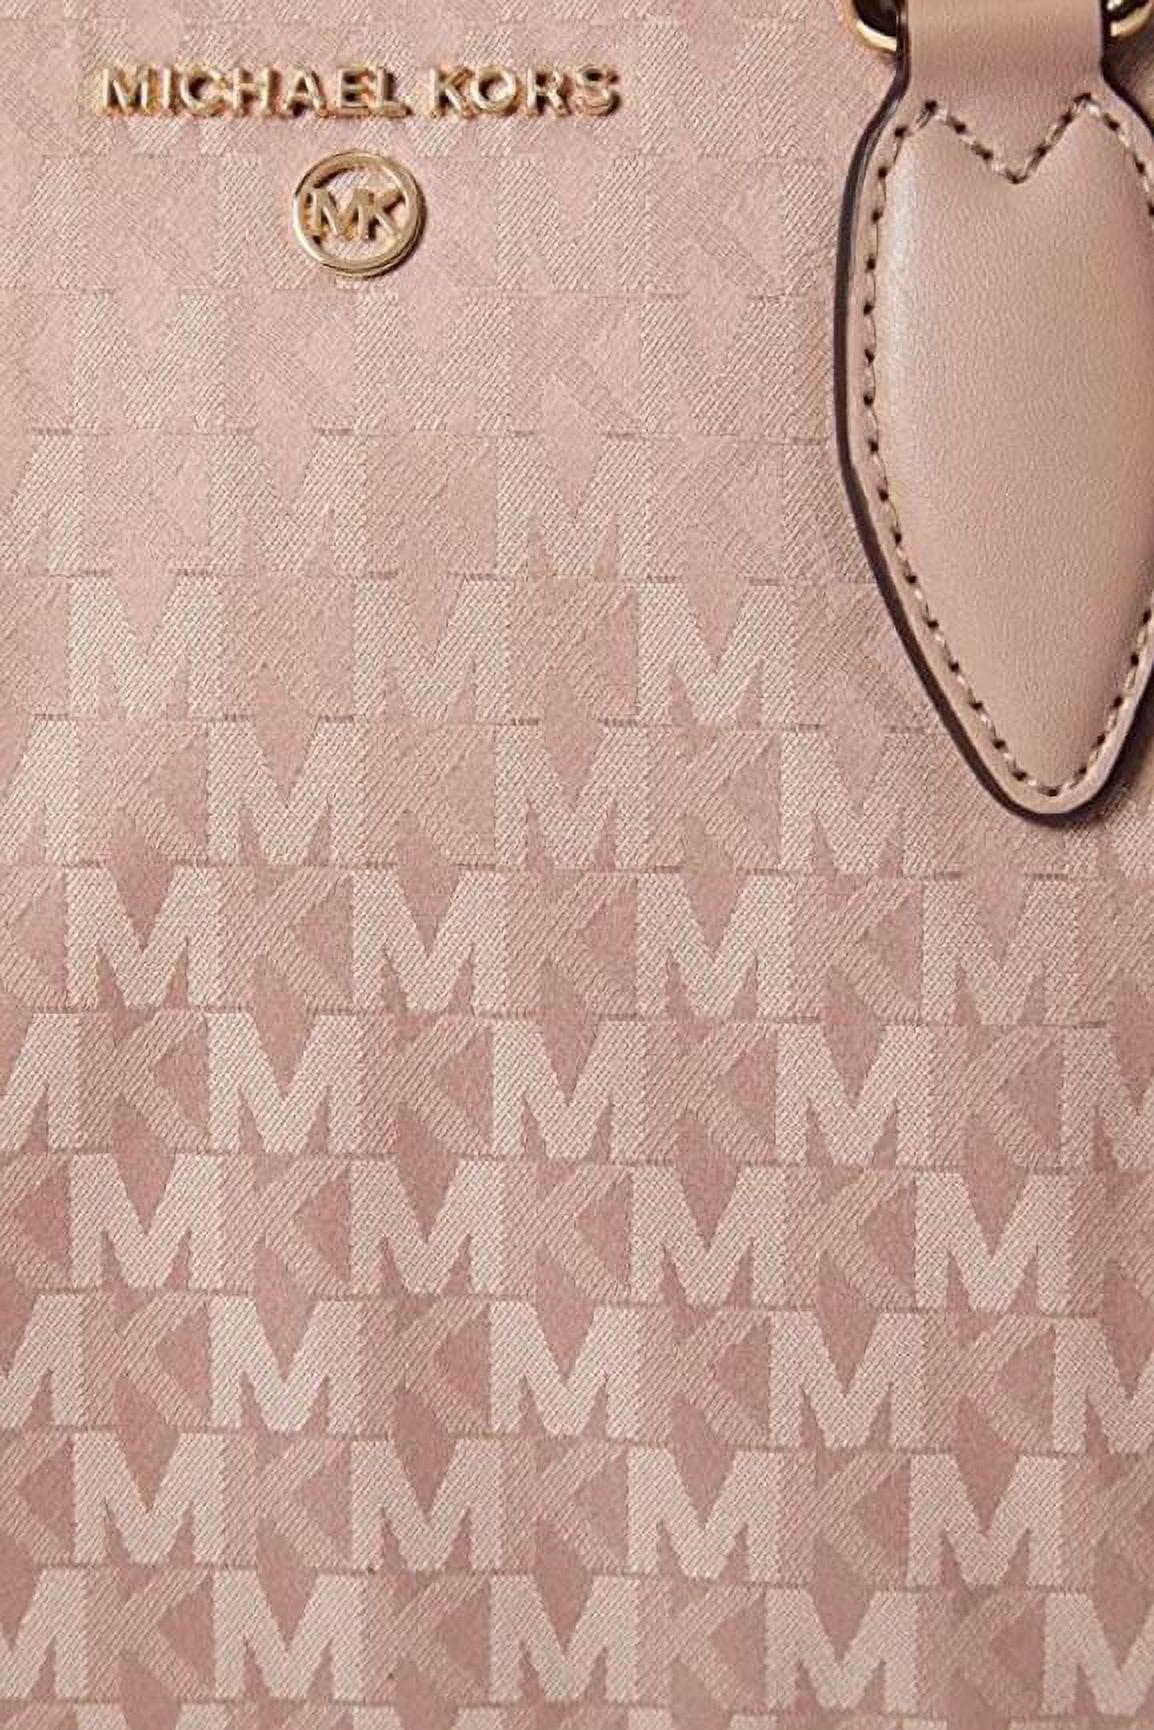 Michael Kors Ladies Sienna Medium Pebbled Leather Satchel - Luggage  30F1G4SM2L 230 194900726723 - Handbags - Jomashop